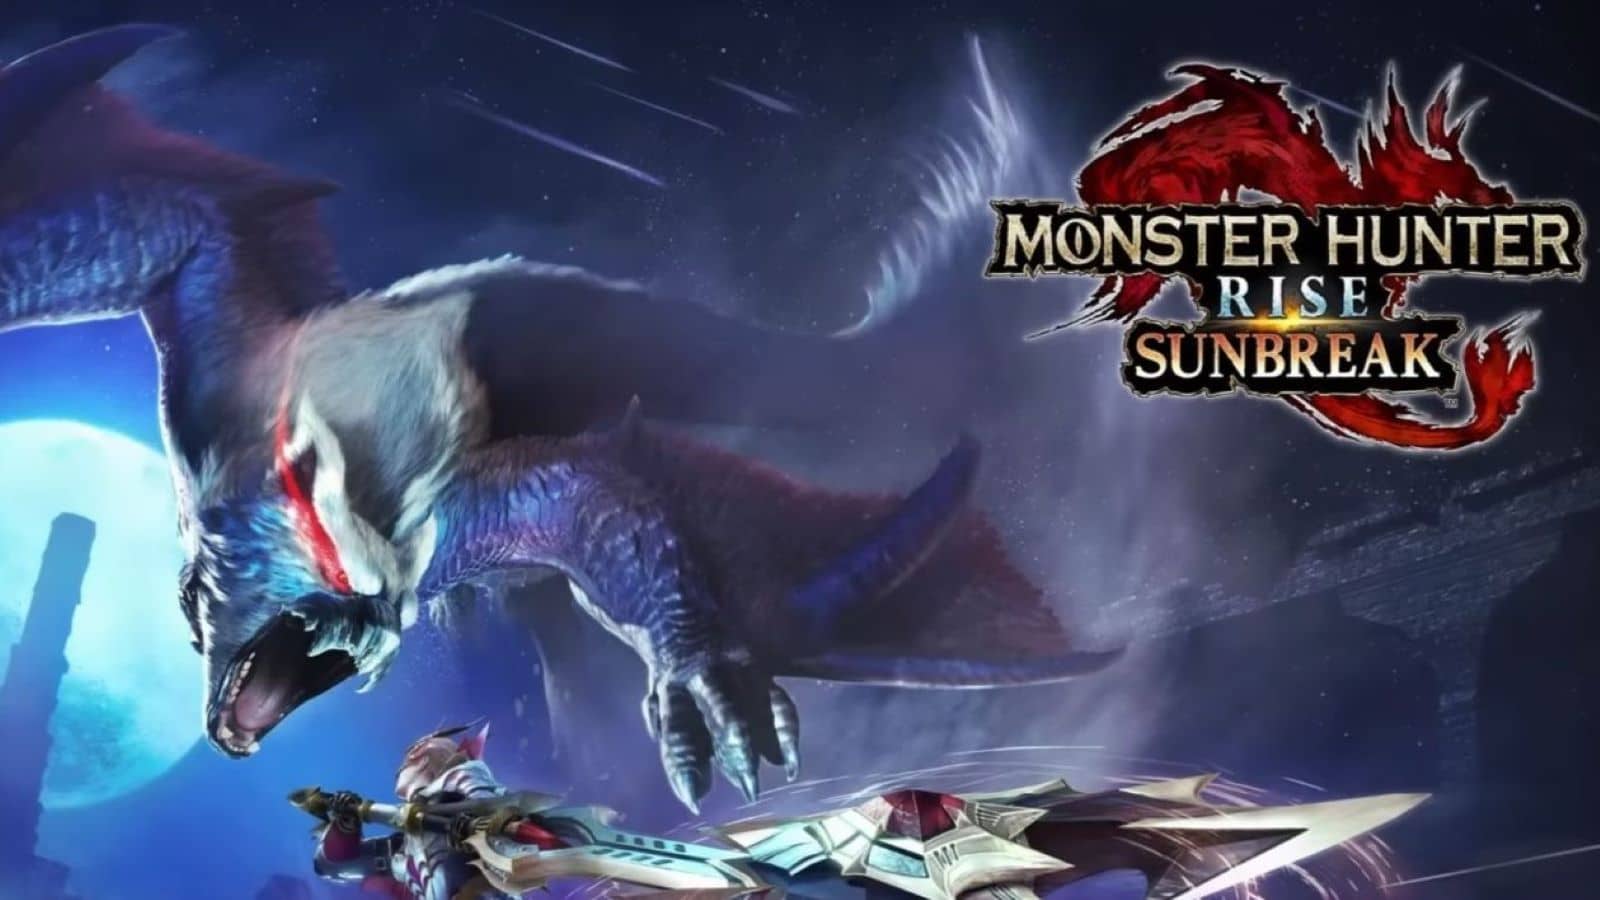 Monster Hunter Rise: Sunbreak Digital Event